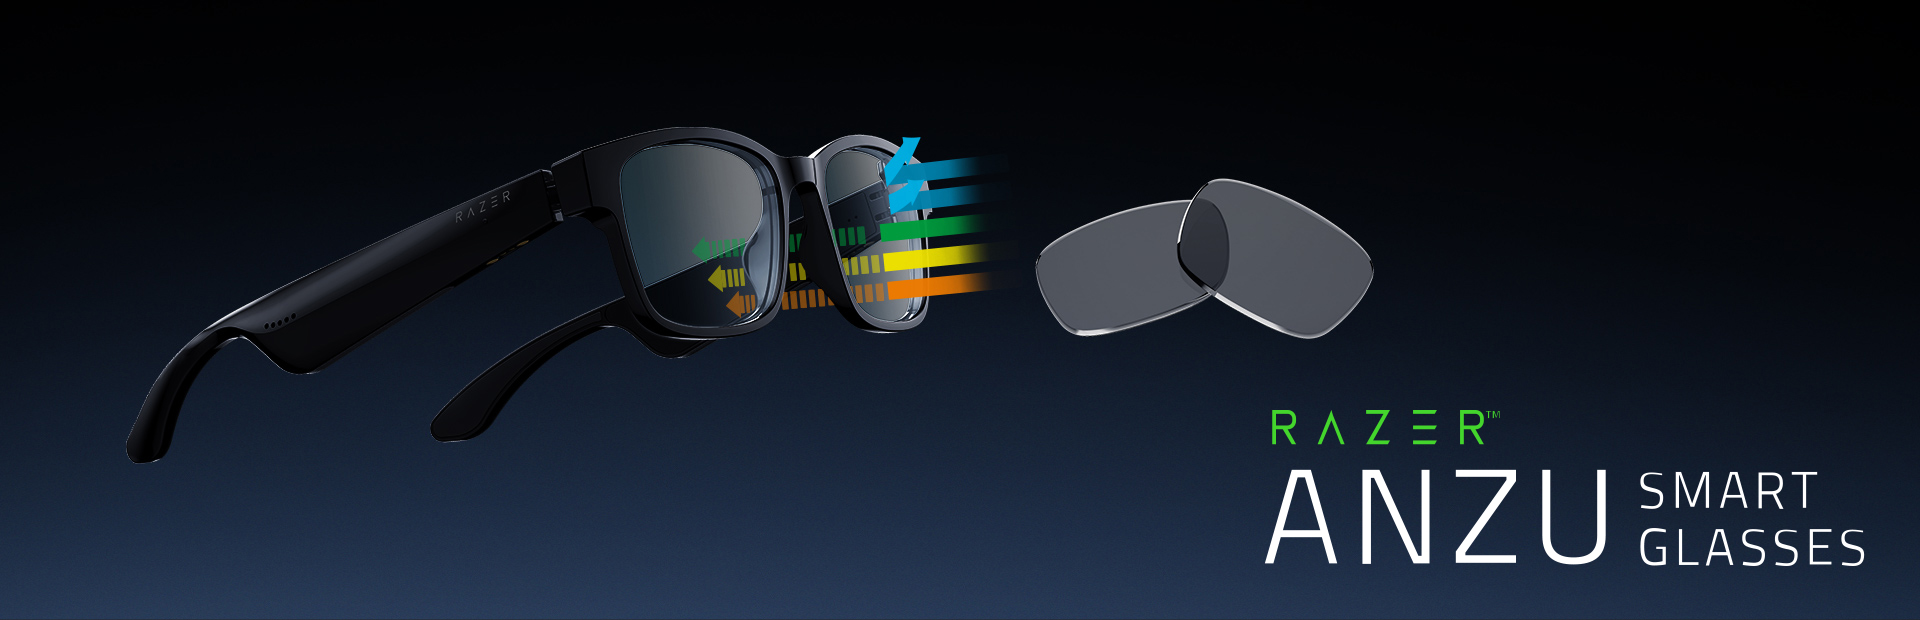 عینک هوشمند ریزر مدل Razer Anzu با فریم مستطیلی